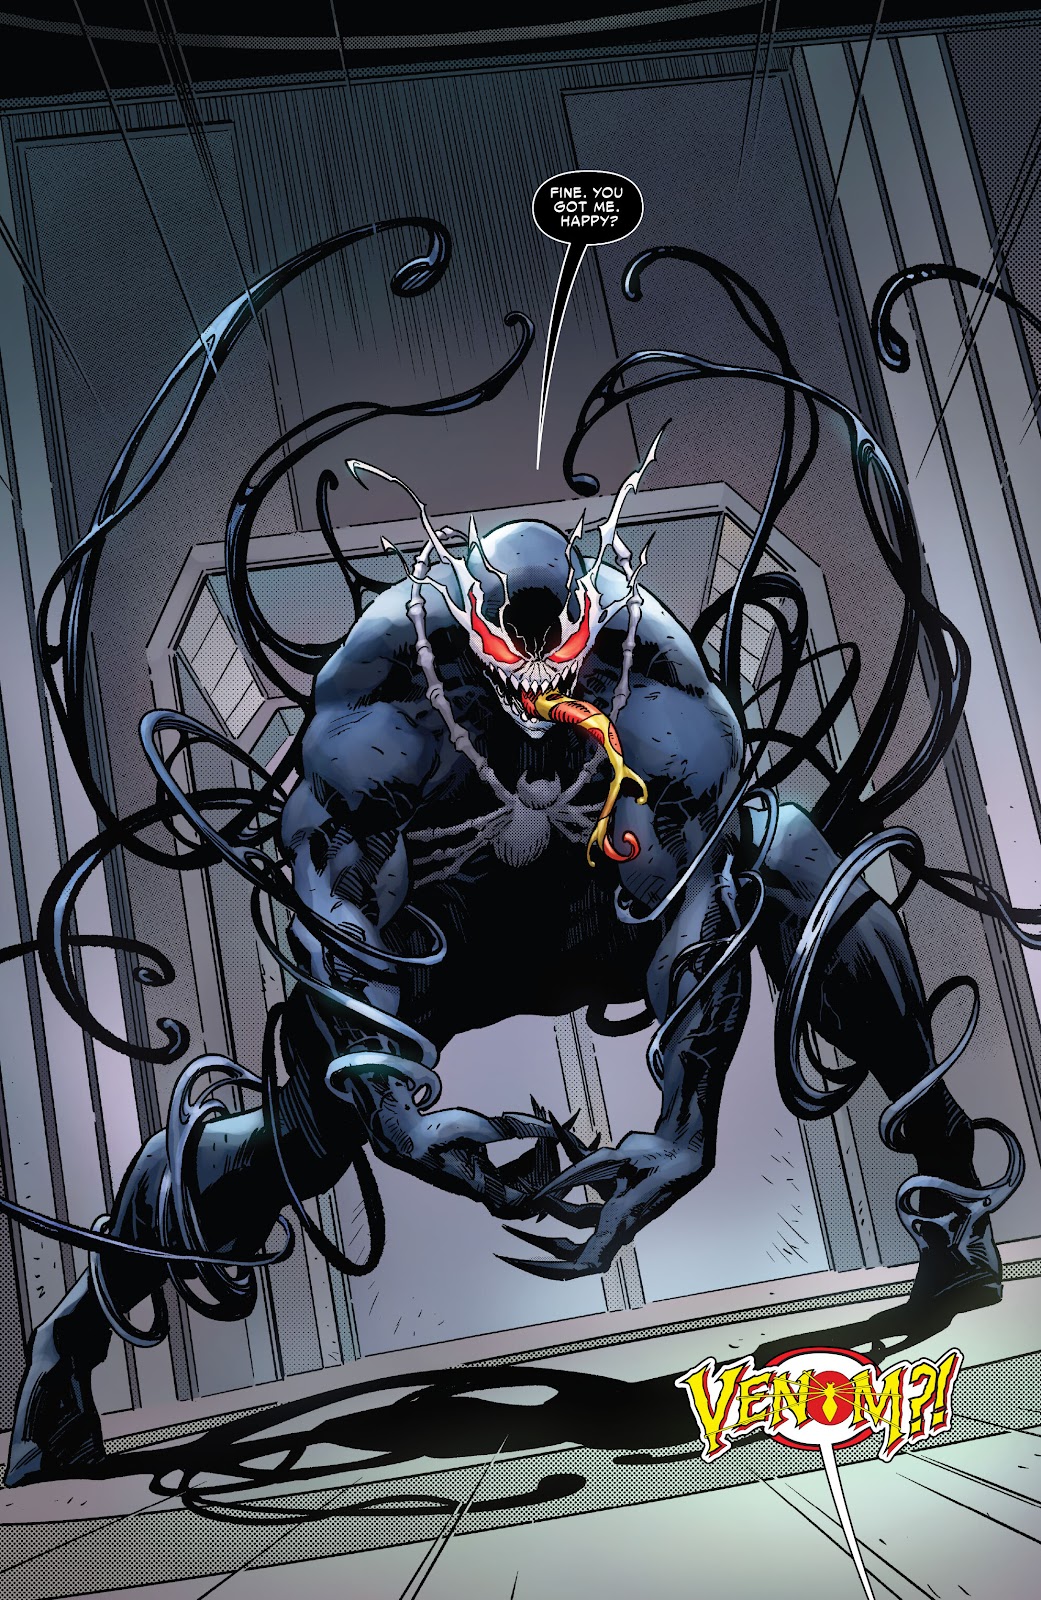 Symbiote Spider-Man 2099 issue 2 - Page 16